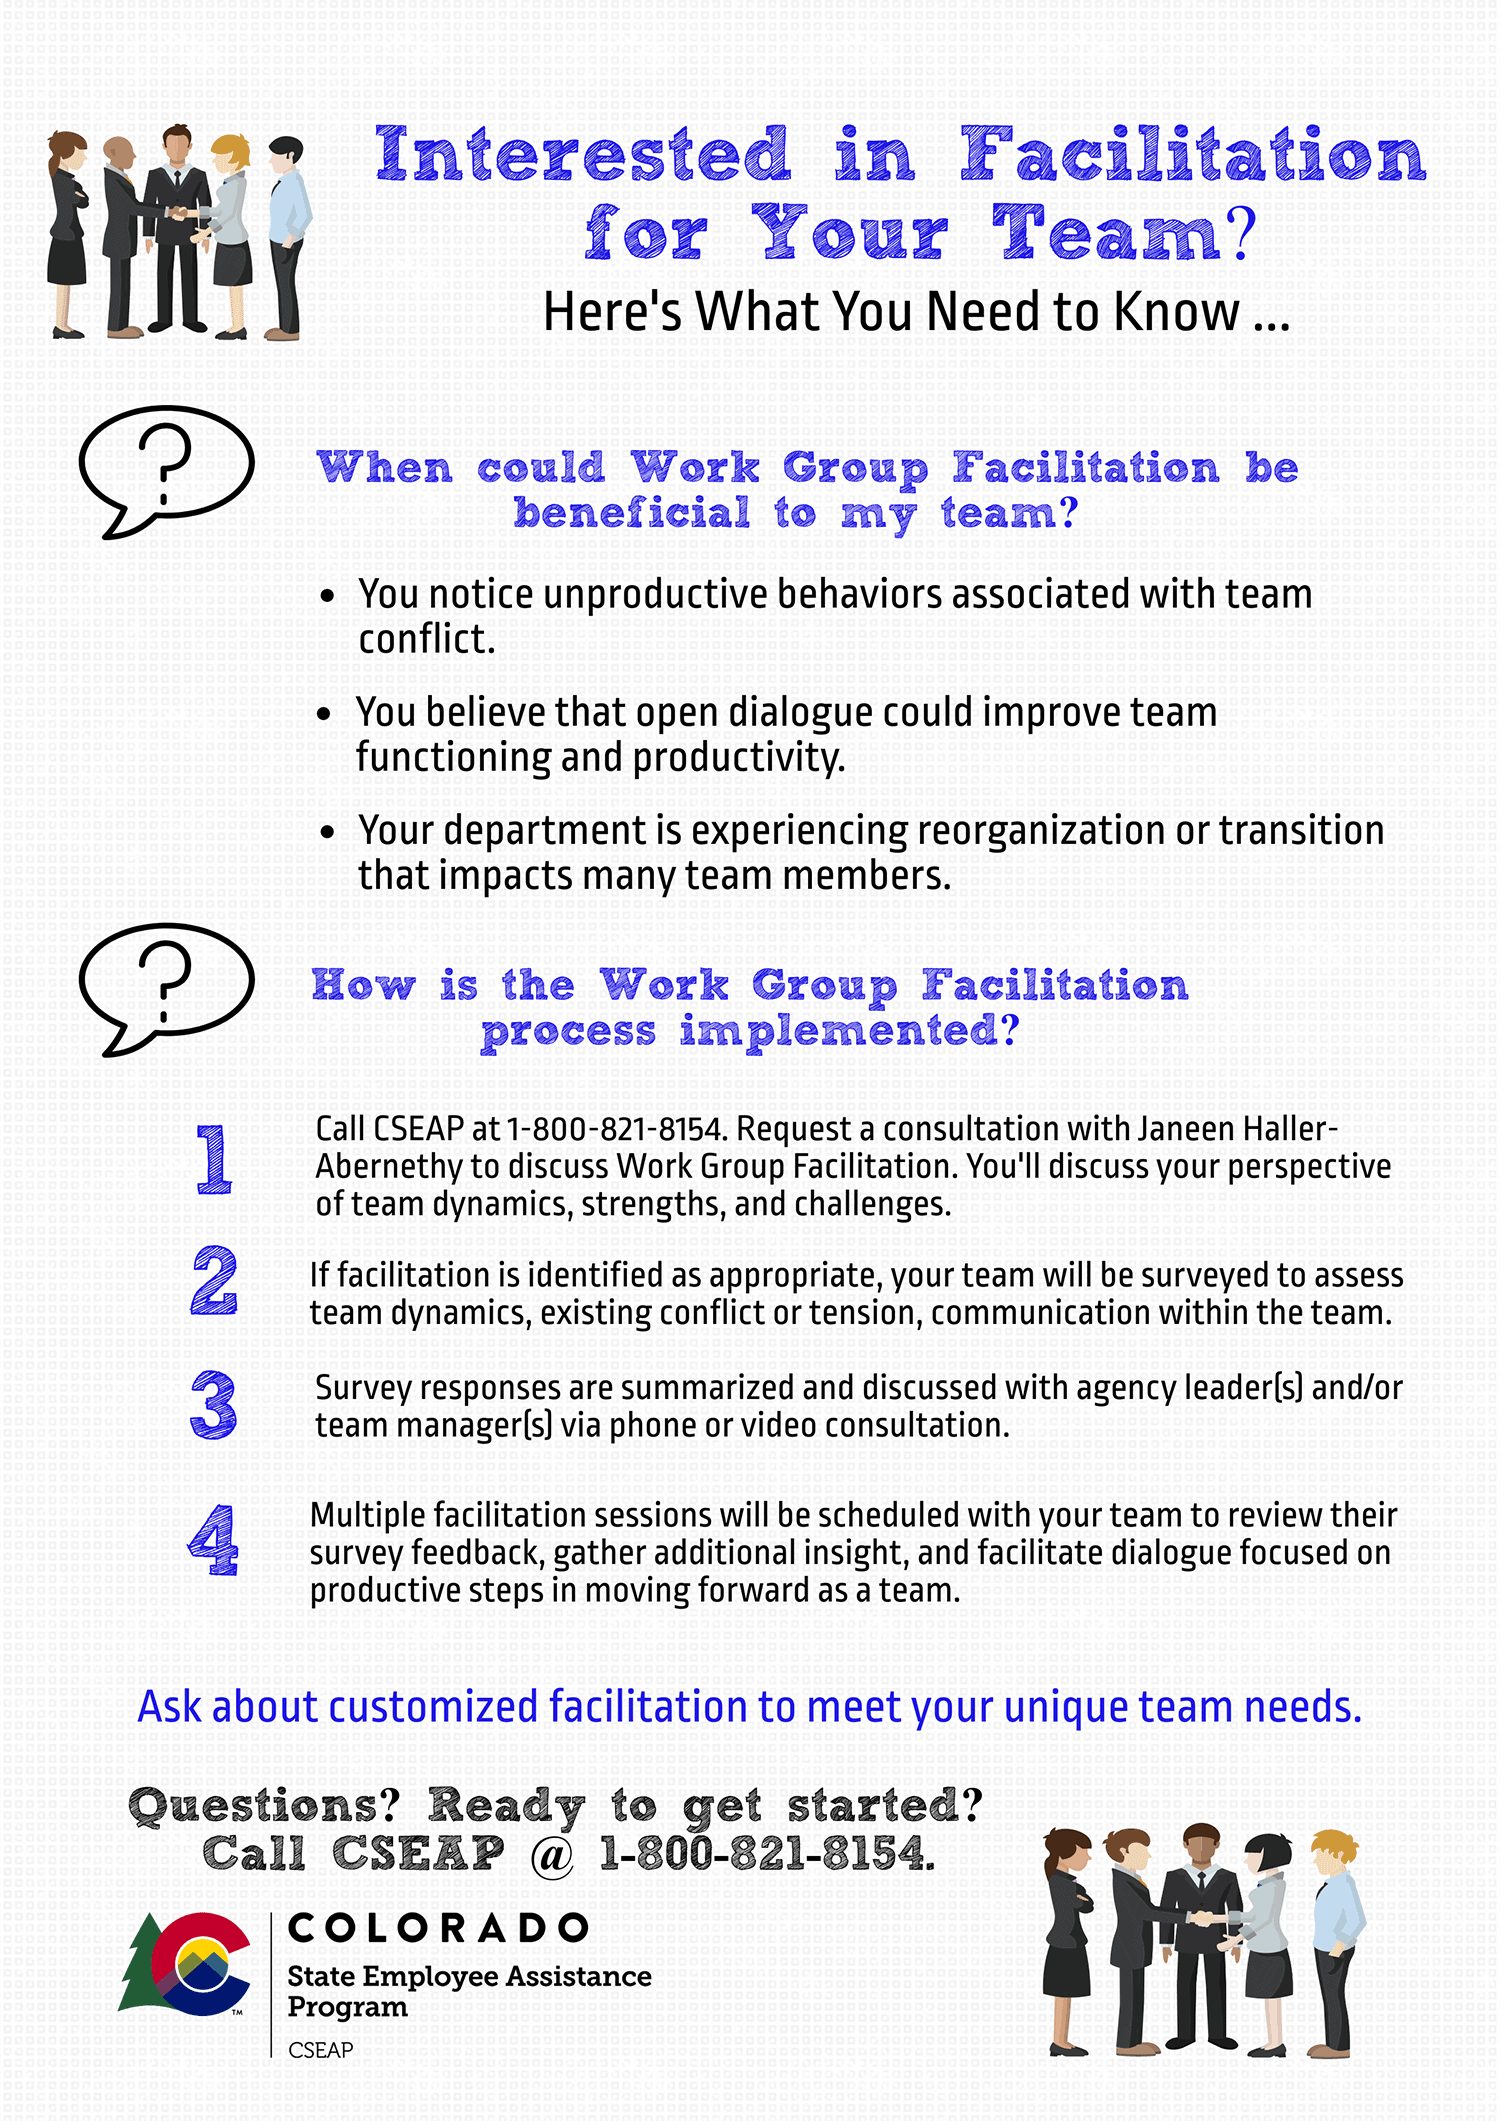 Infographic describing Work Group Facilitation